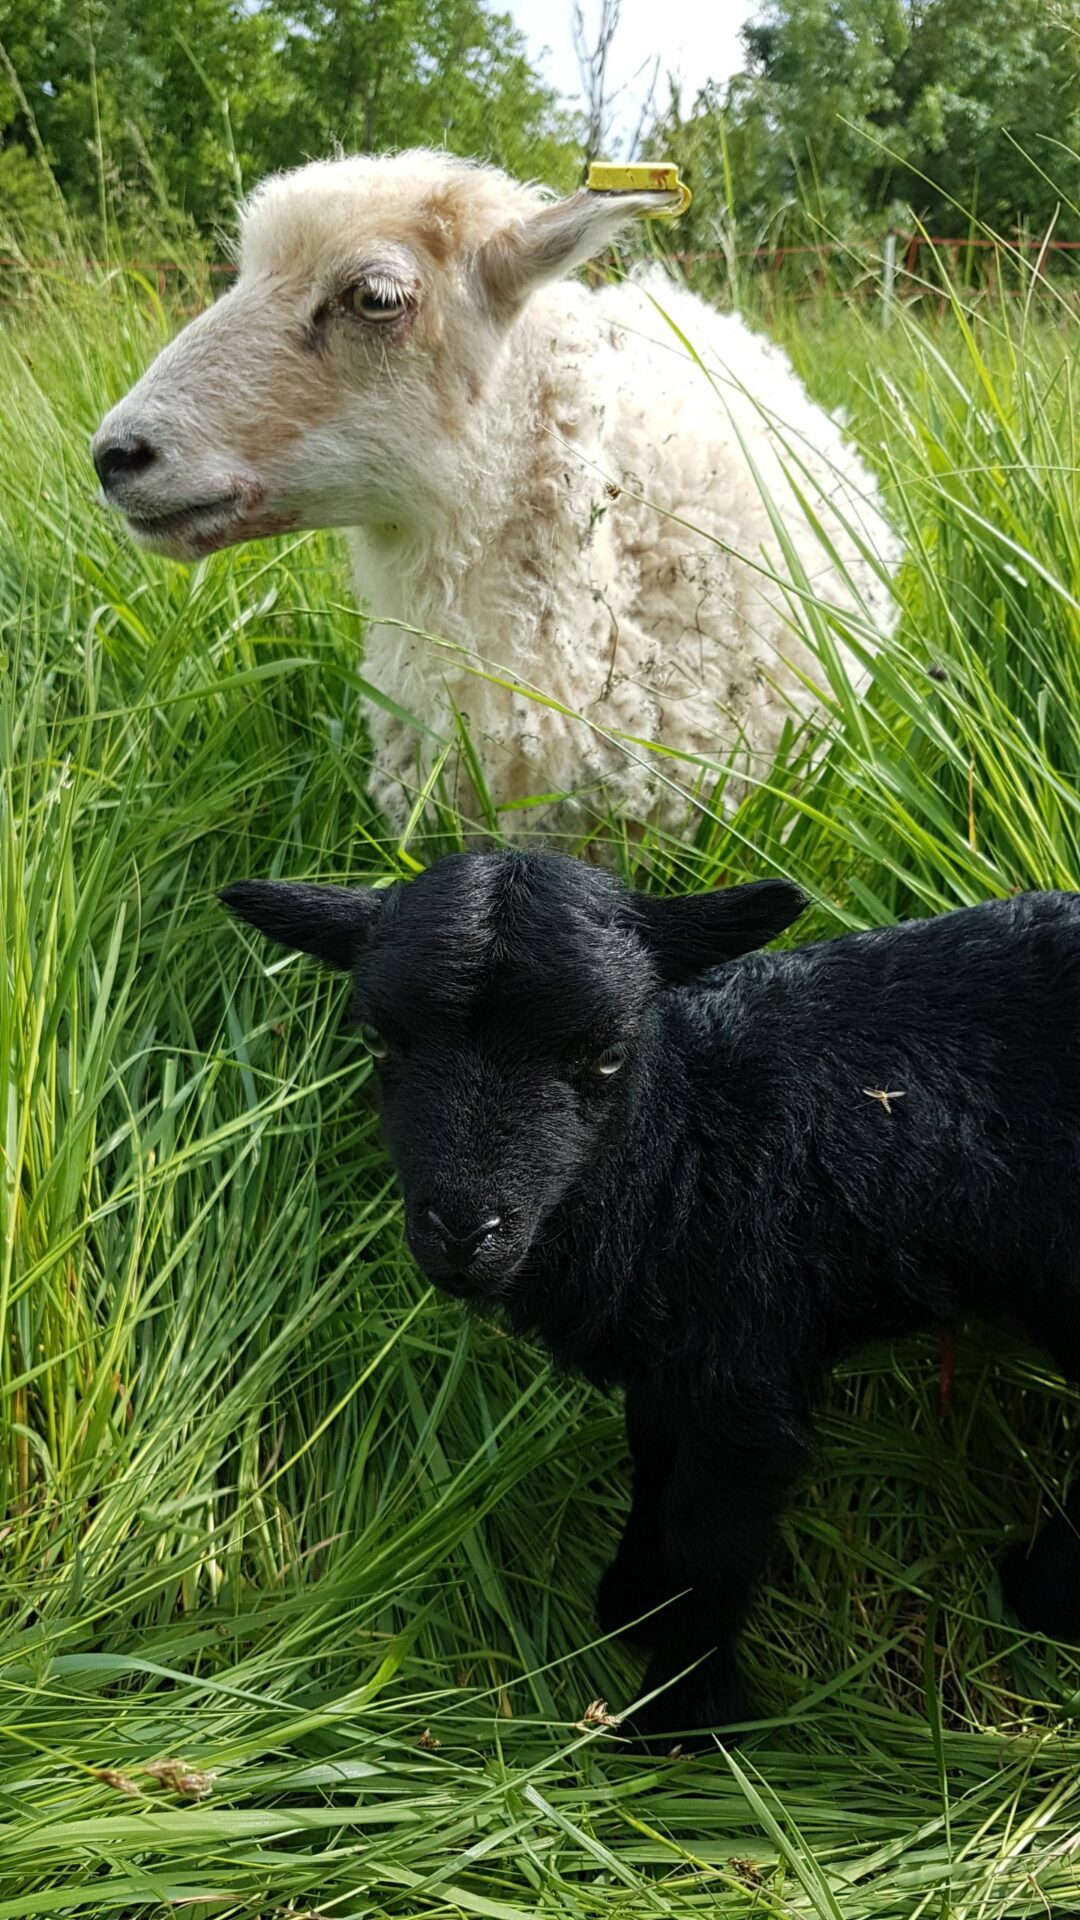 Photo de 2 moutons